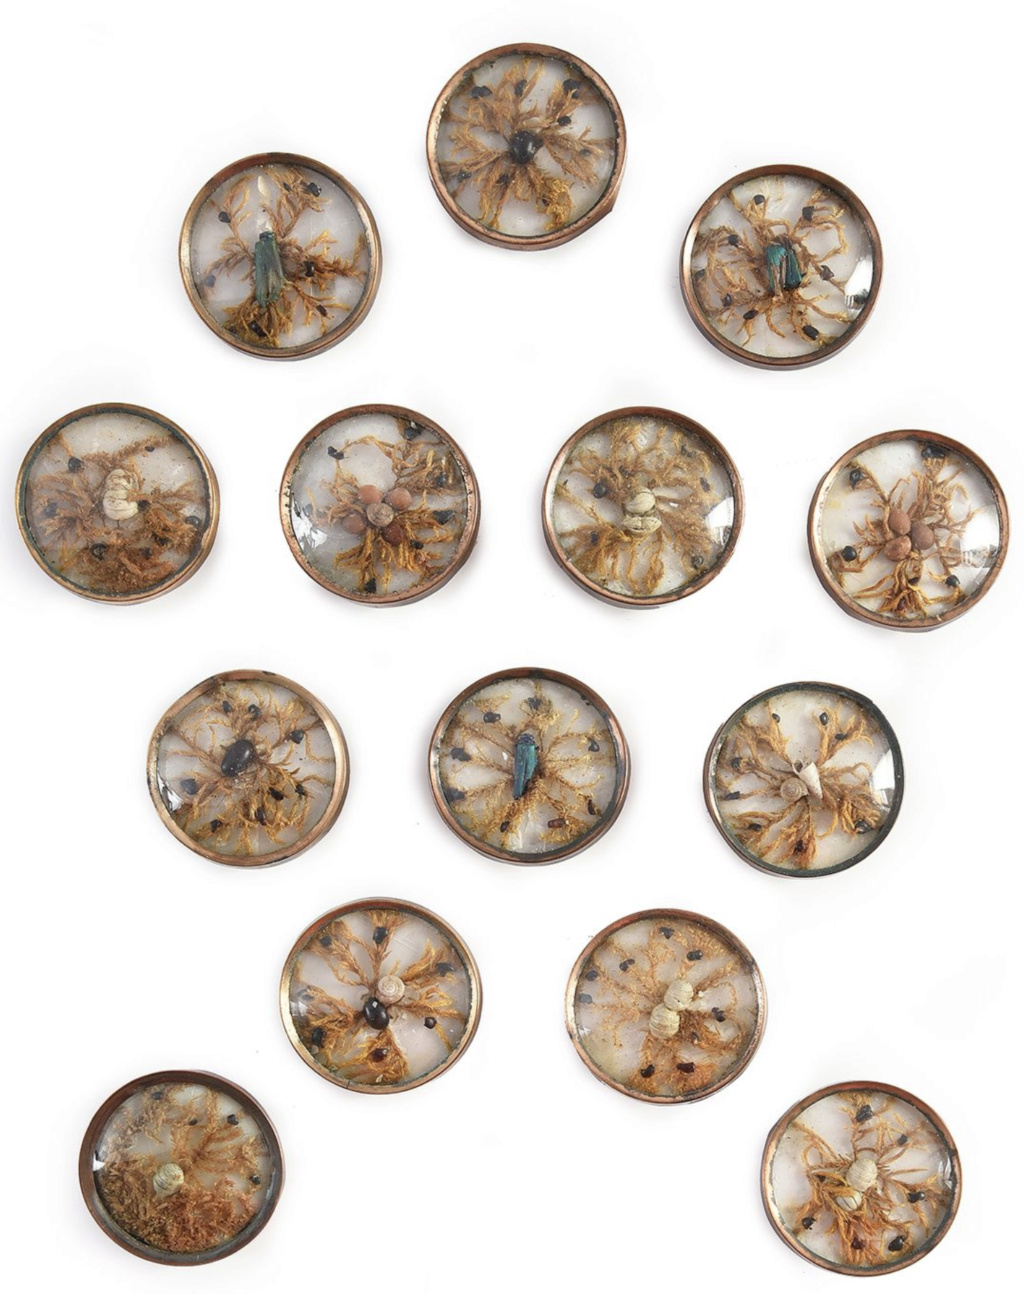 Les boutons, accessoires de mode au XVIIIe siècle - Page 3 Capt3768